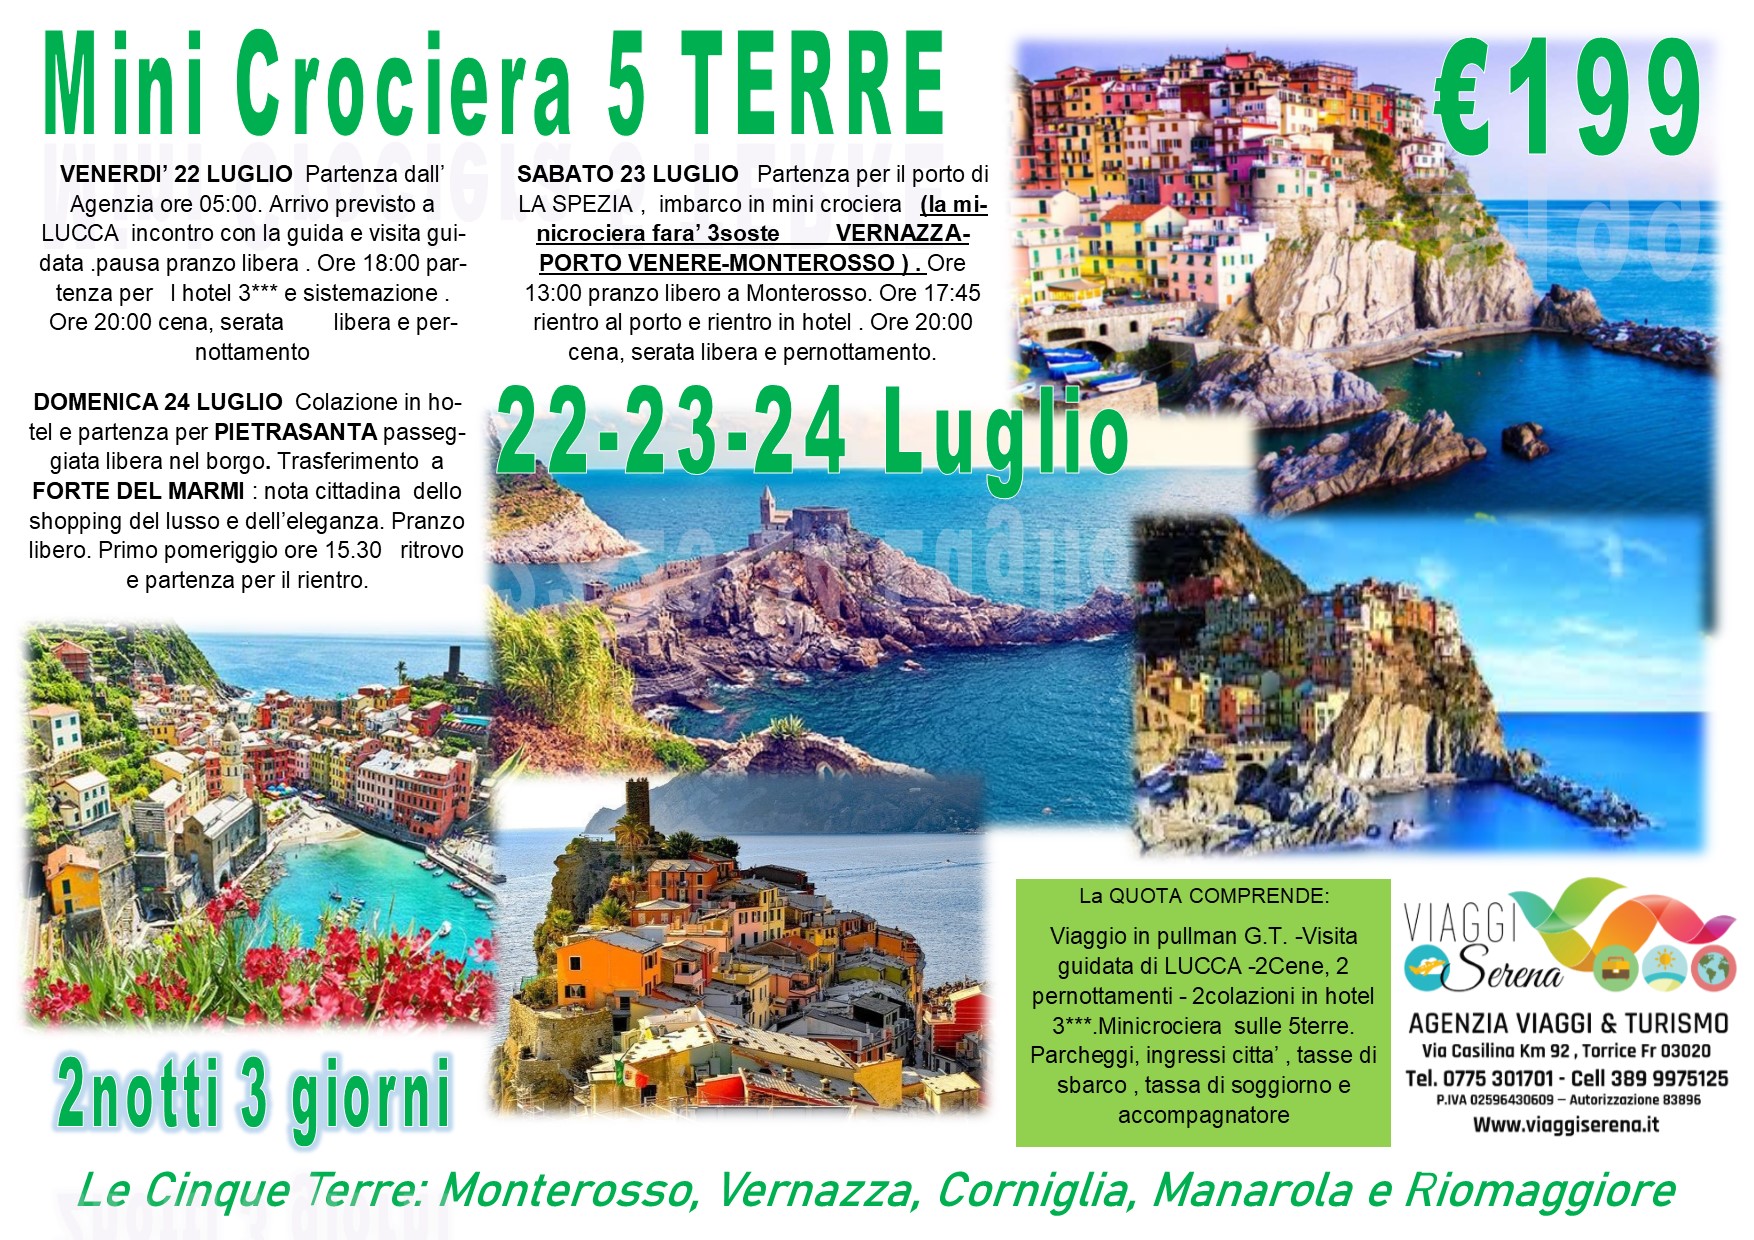 Viaggi di Gruppo: Pietrasanta, Forte dei Marmi , Lucca & Mini Crociera Cinque Terre 22-23-24 Luglio €199,00